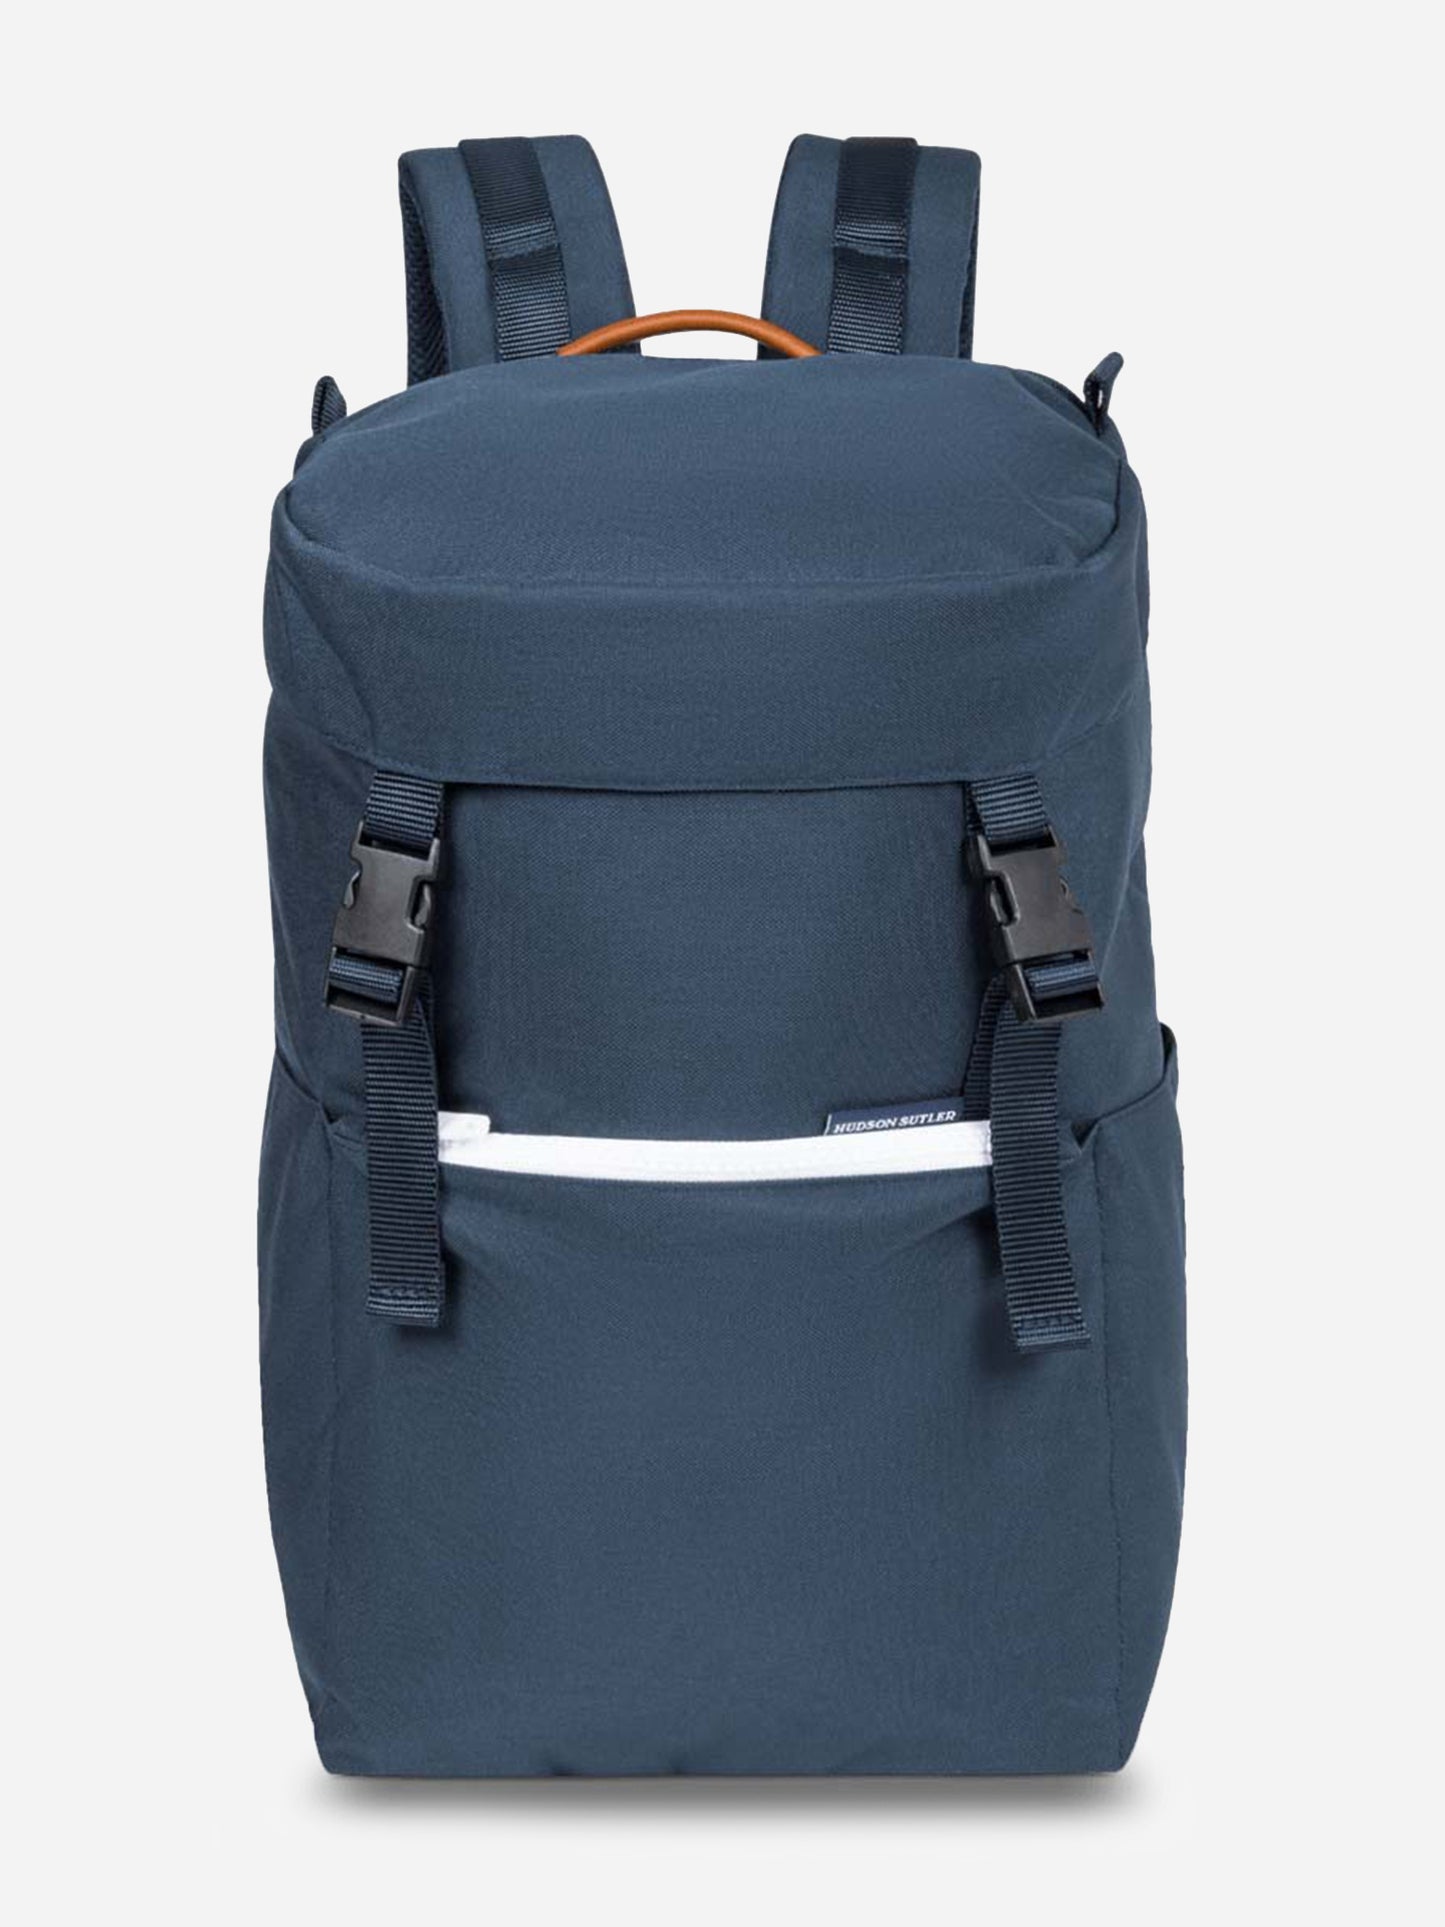 Hudson Sutler Nylon Cooler Backpack